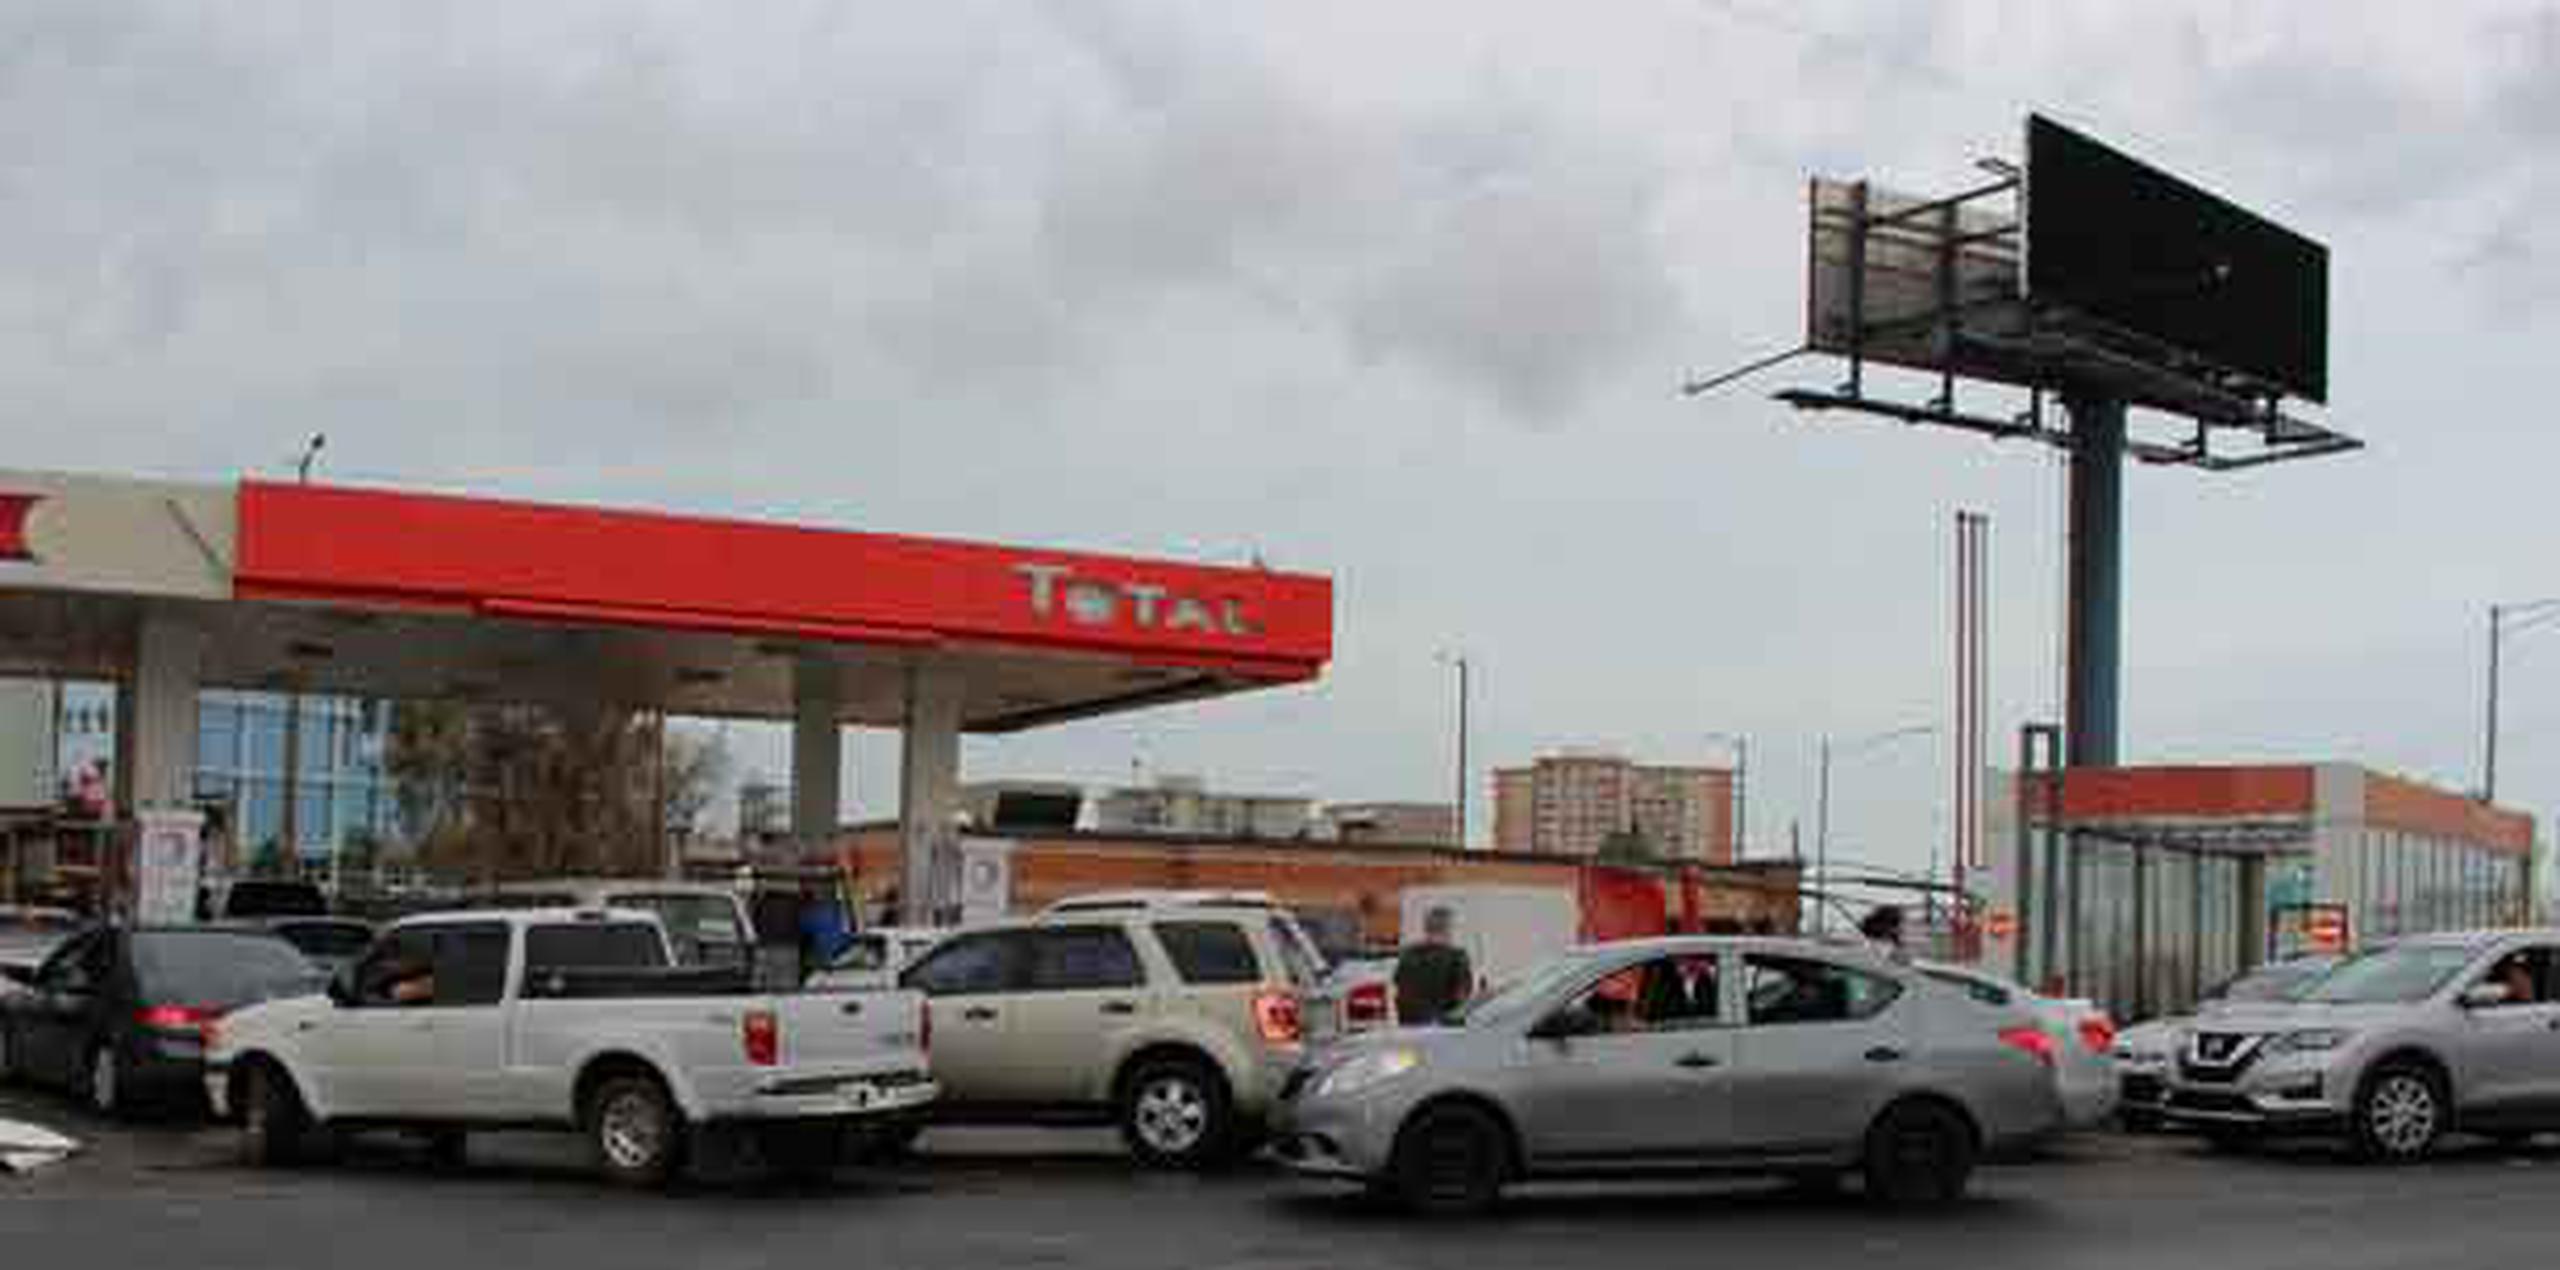 Para rendir el combustible, el encargado del establecimiento dijo que solo estaban permitiendo un máximo de $10 de gasolina por cliente.